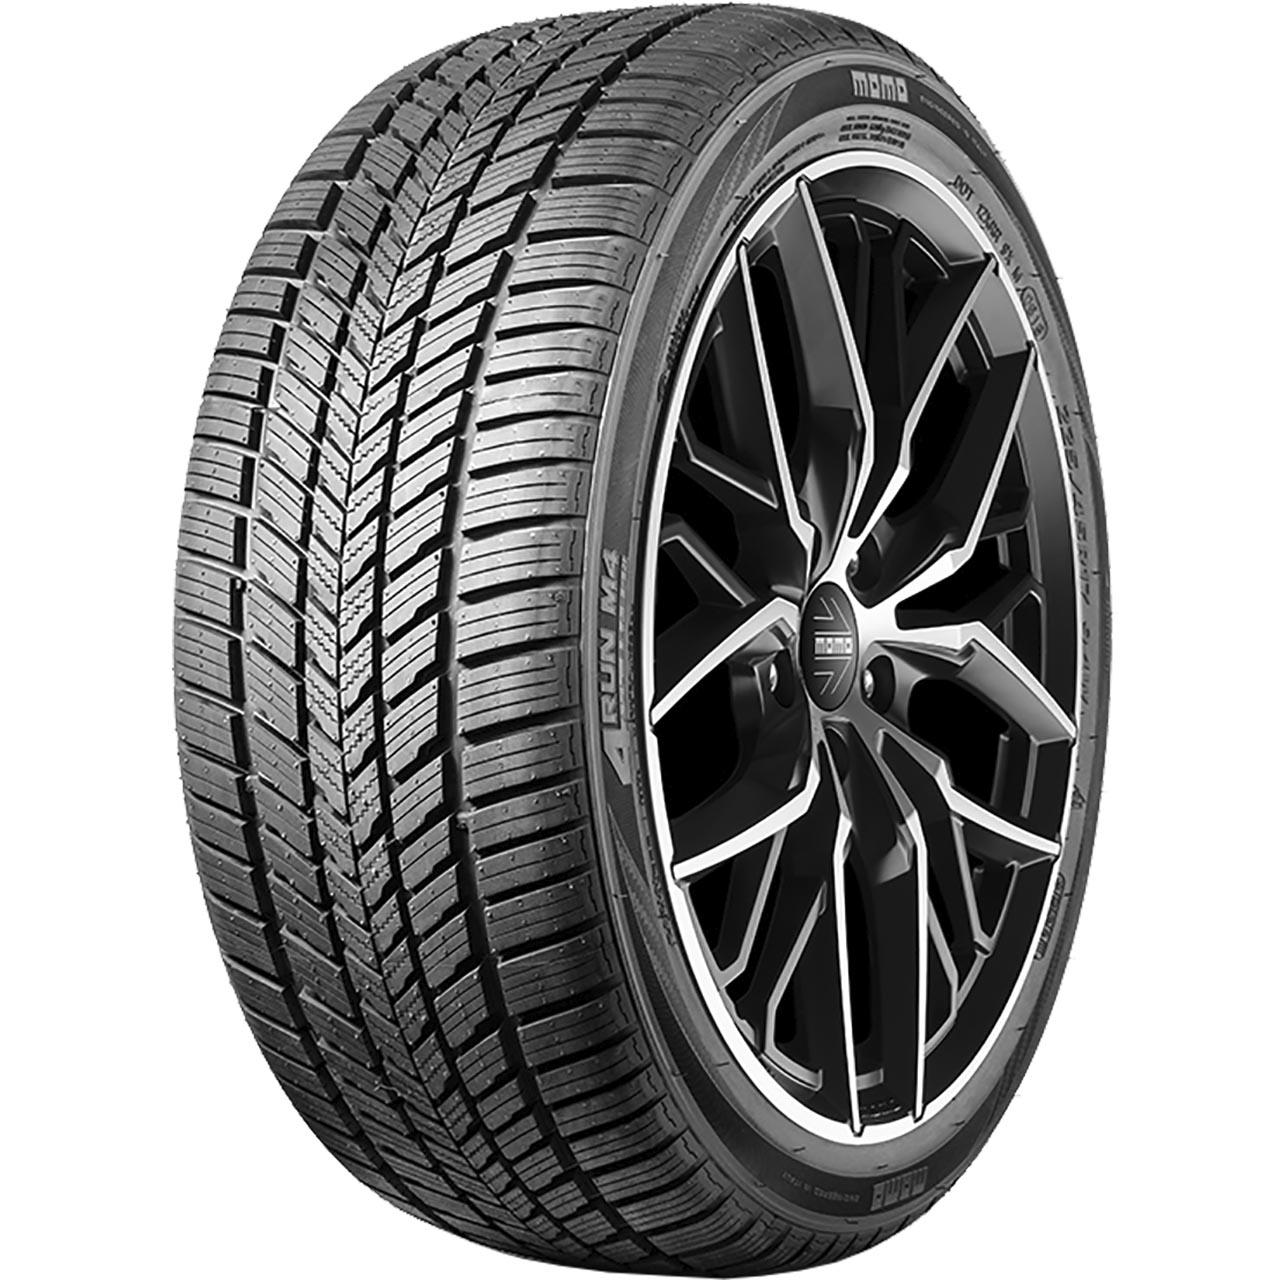 Momo Tire M 4 Four Season 195/50R16 88V XL